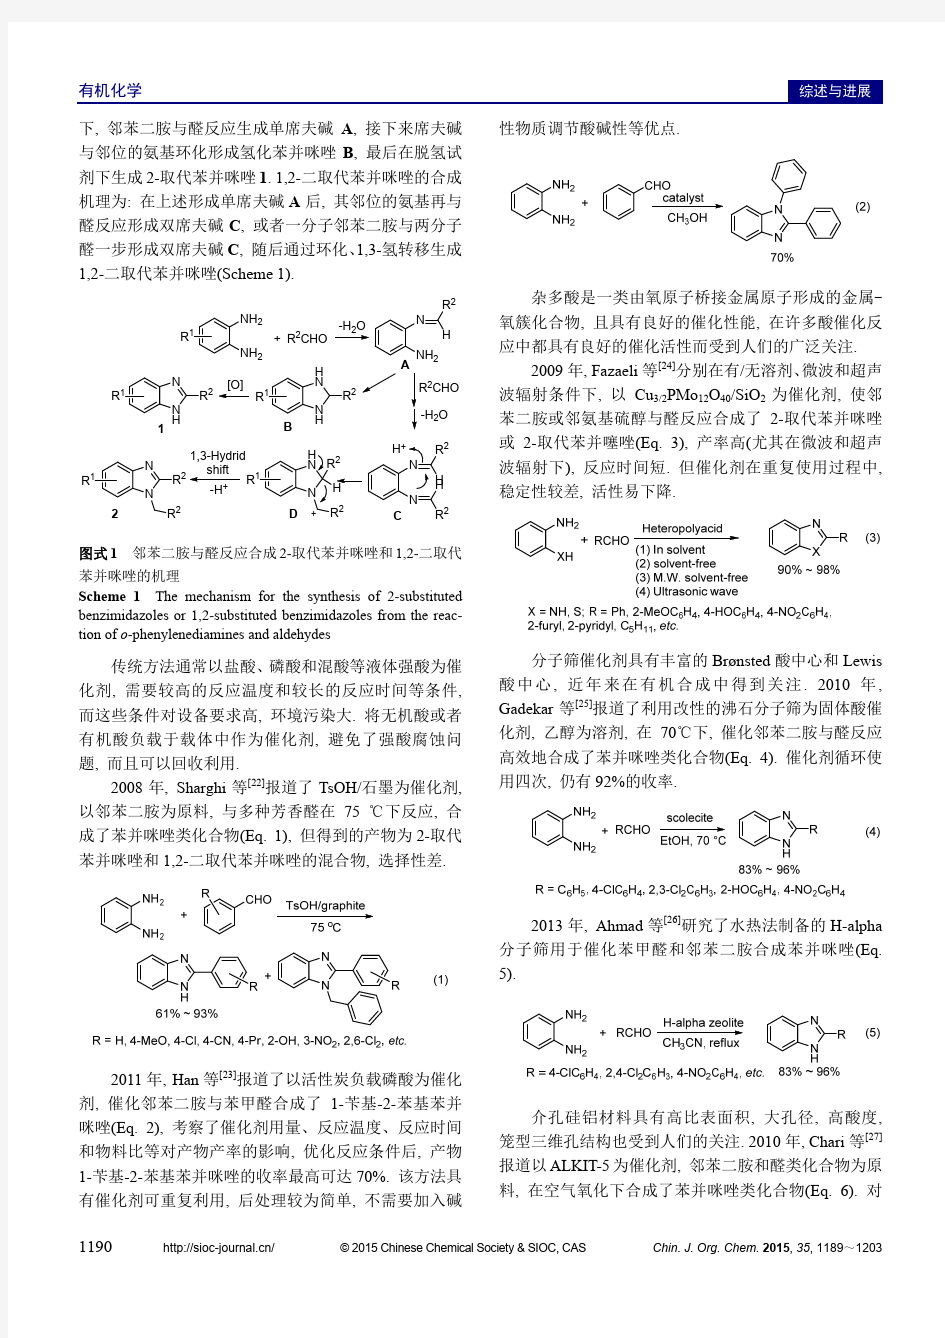 苯并咪唑类化合物催化合成的研究进展